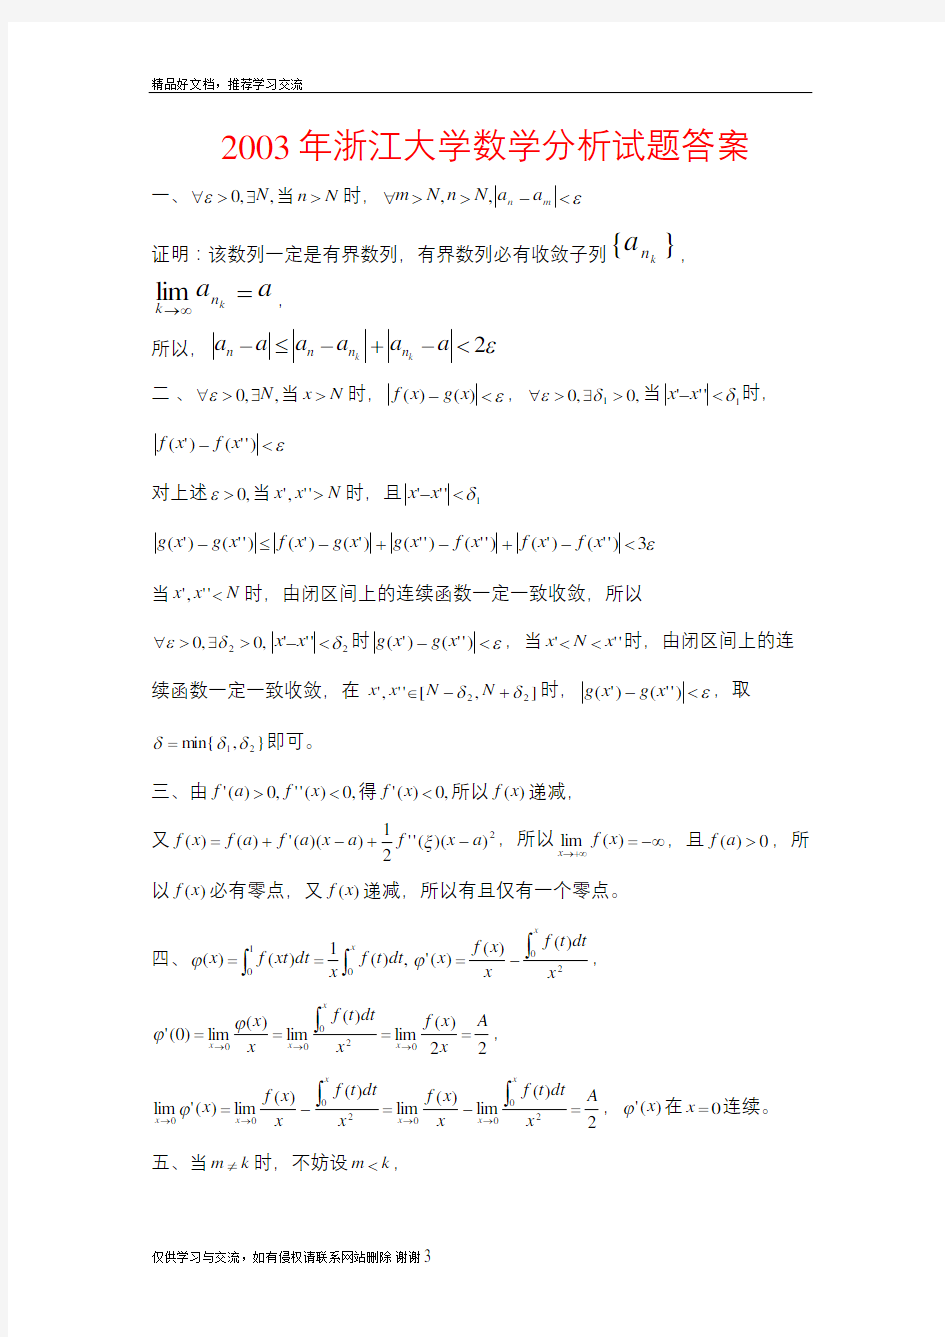 最新2003年浙江大学数学分析试题答案